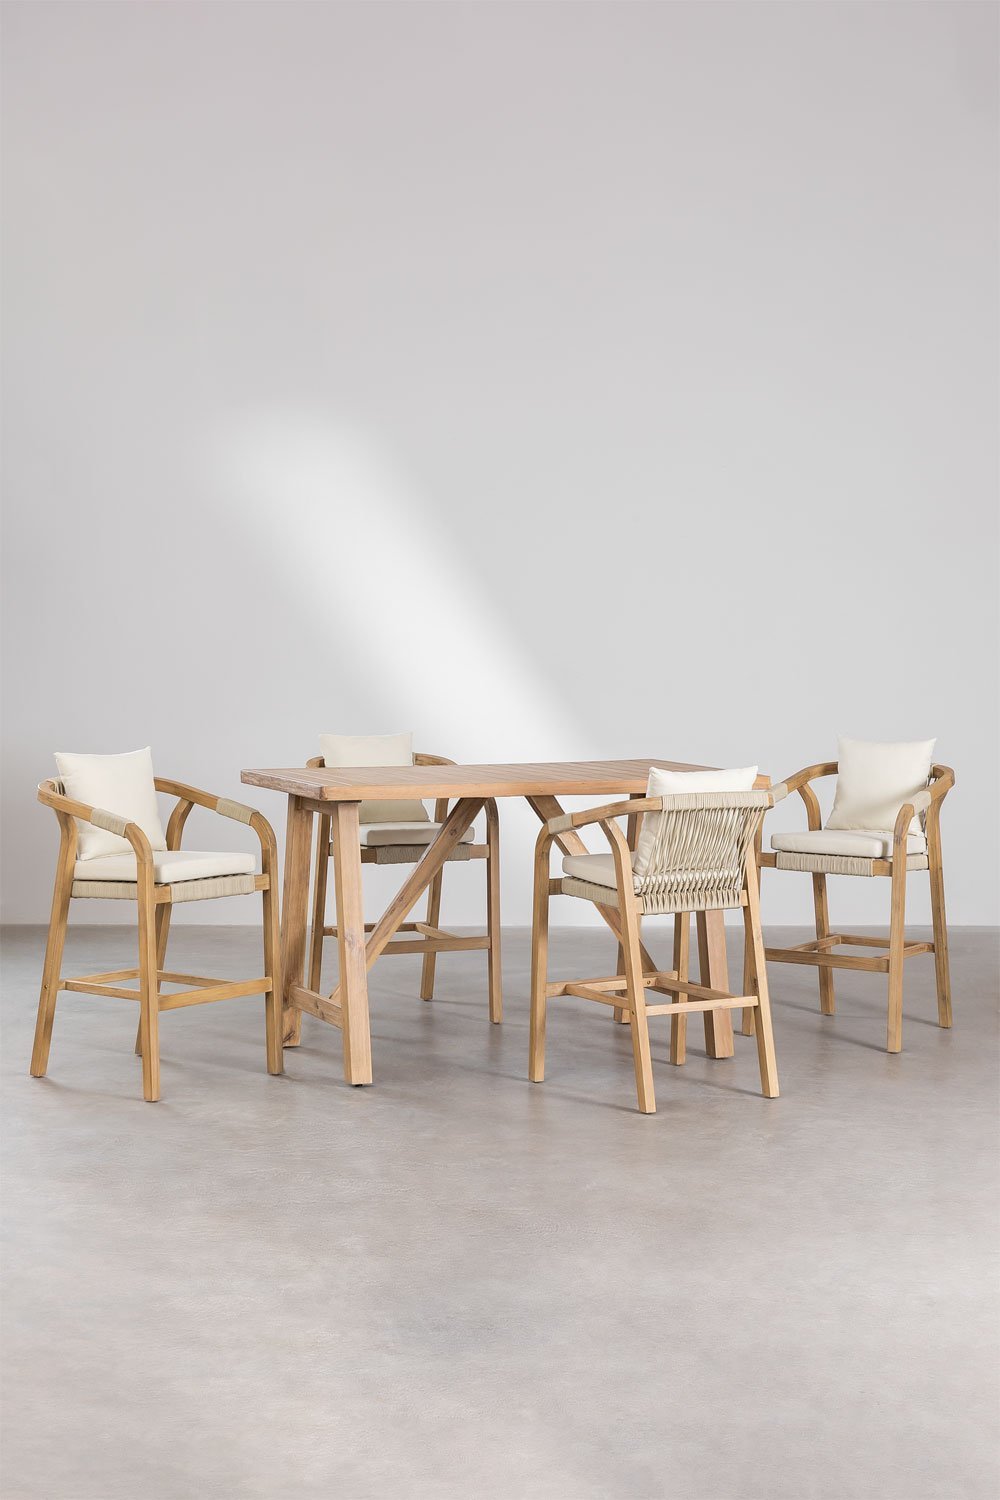 Ensemble de Table Haute Rectangulaire (160x90 cm) et 4 Tabourets Hauts en Bois d'Acacia Dubaï, image de la galerie 1